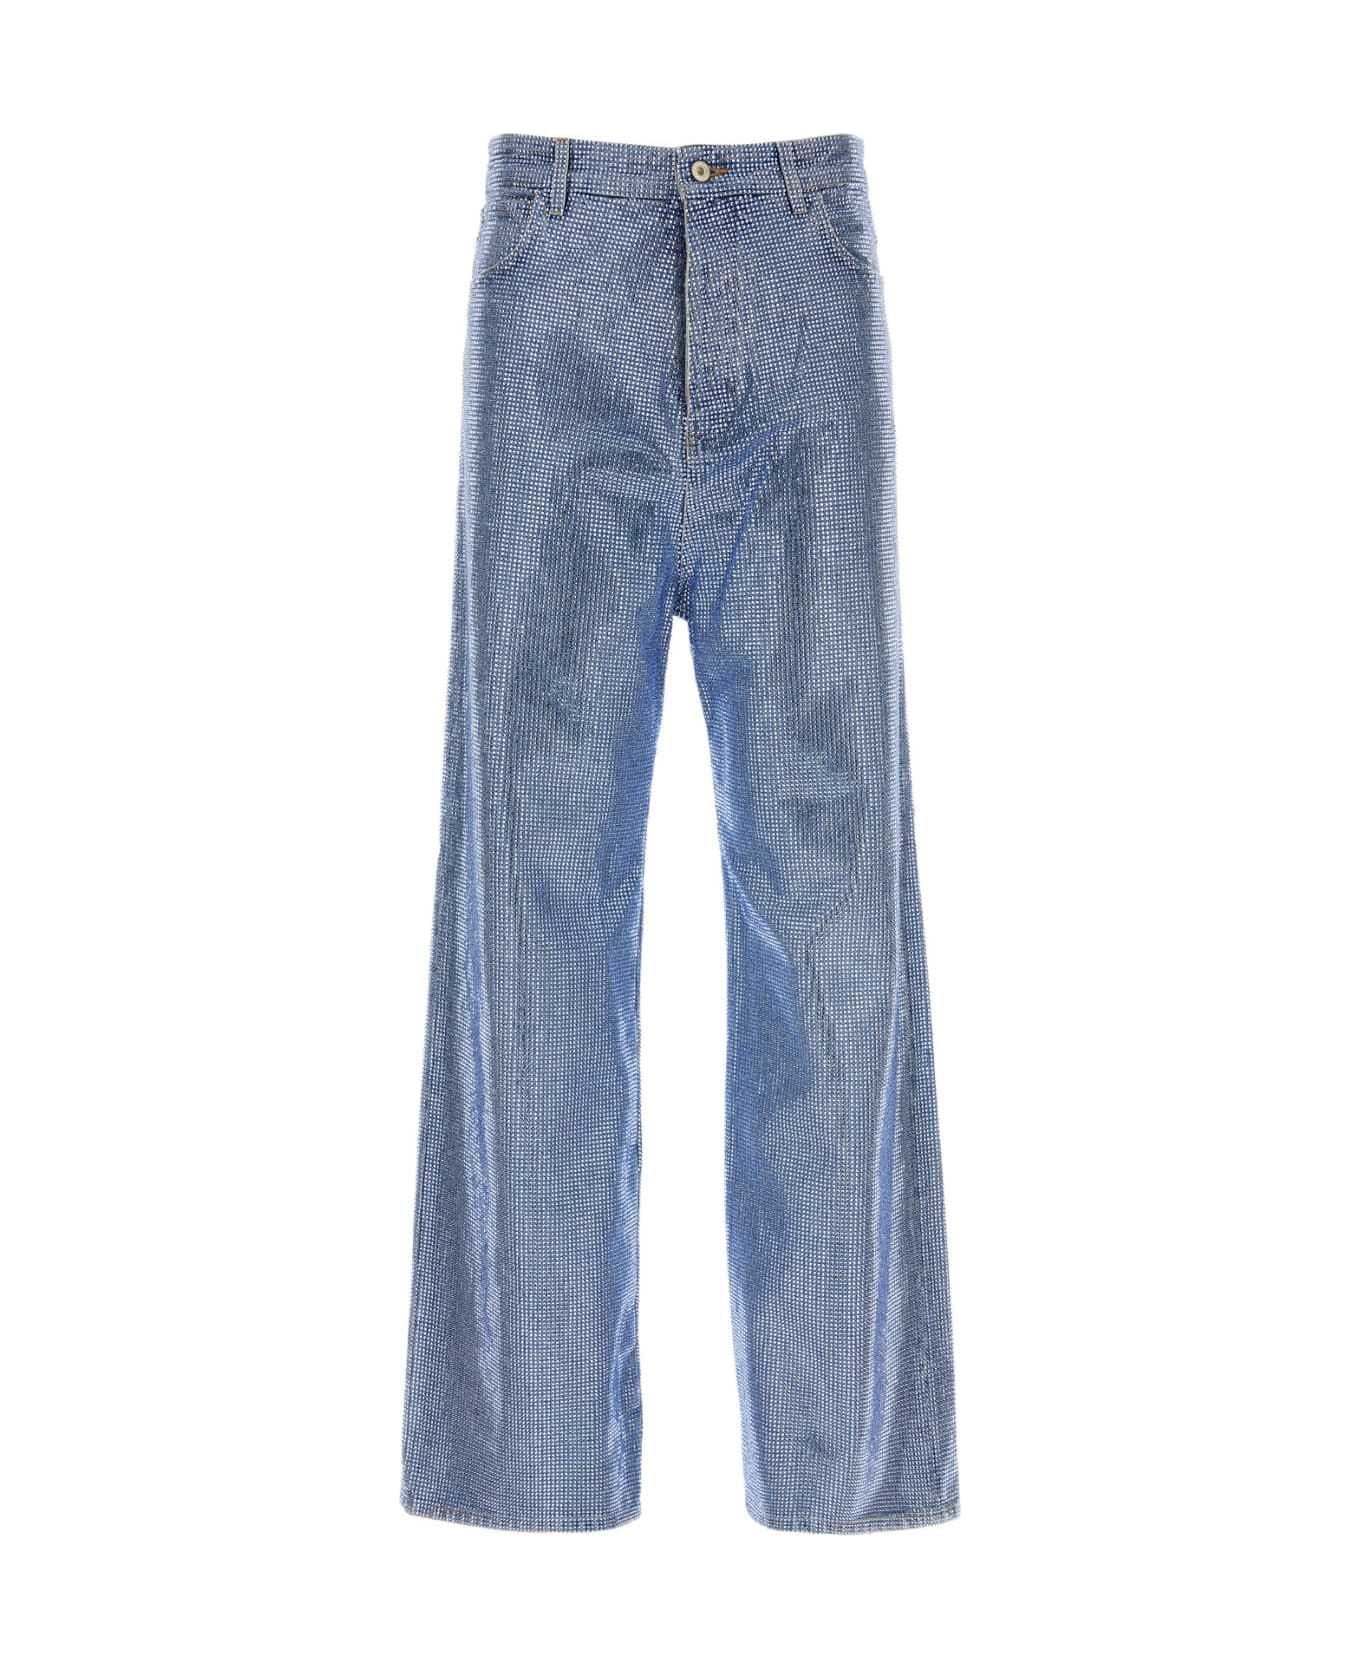 Loewe Embellished Denim Jeans - WASHEDDENIM デニム